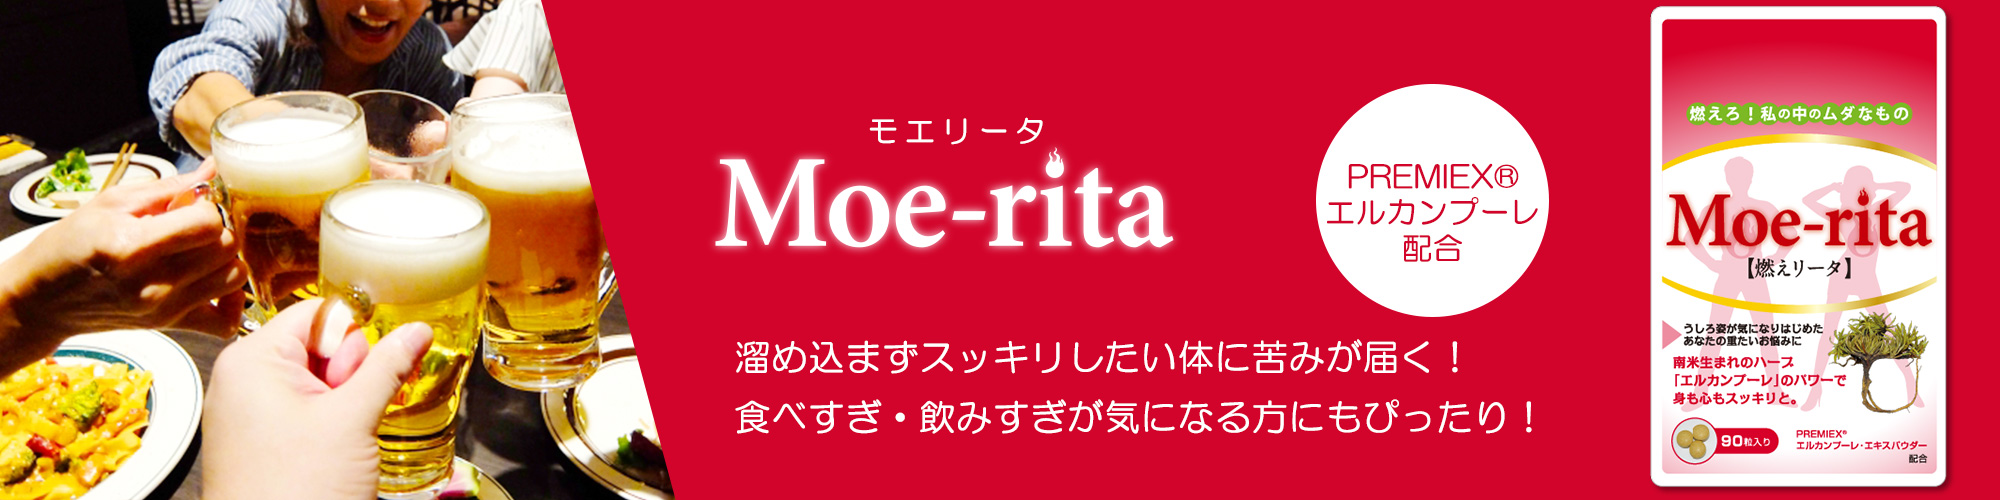 「Moe-rita（燃えリータ）」はコレステロールや中性脂肪・血糖値といったメタボリックシンドロームや生活習慣病予防をサポートするサプリメント